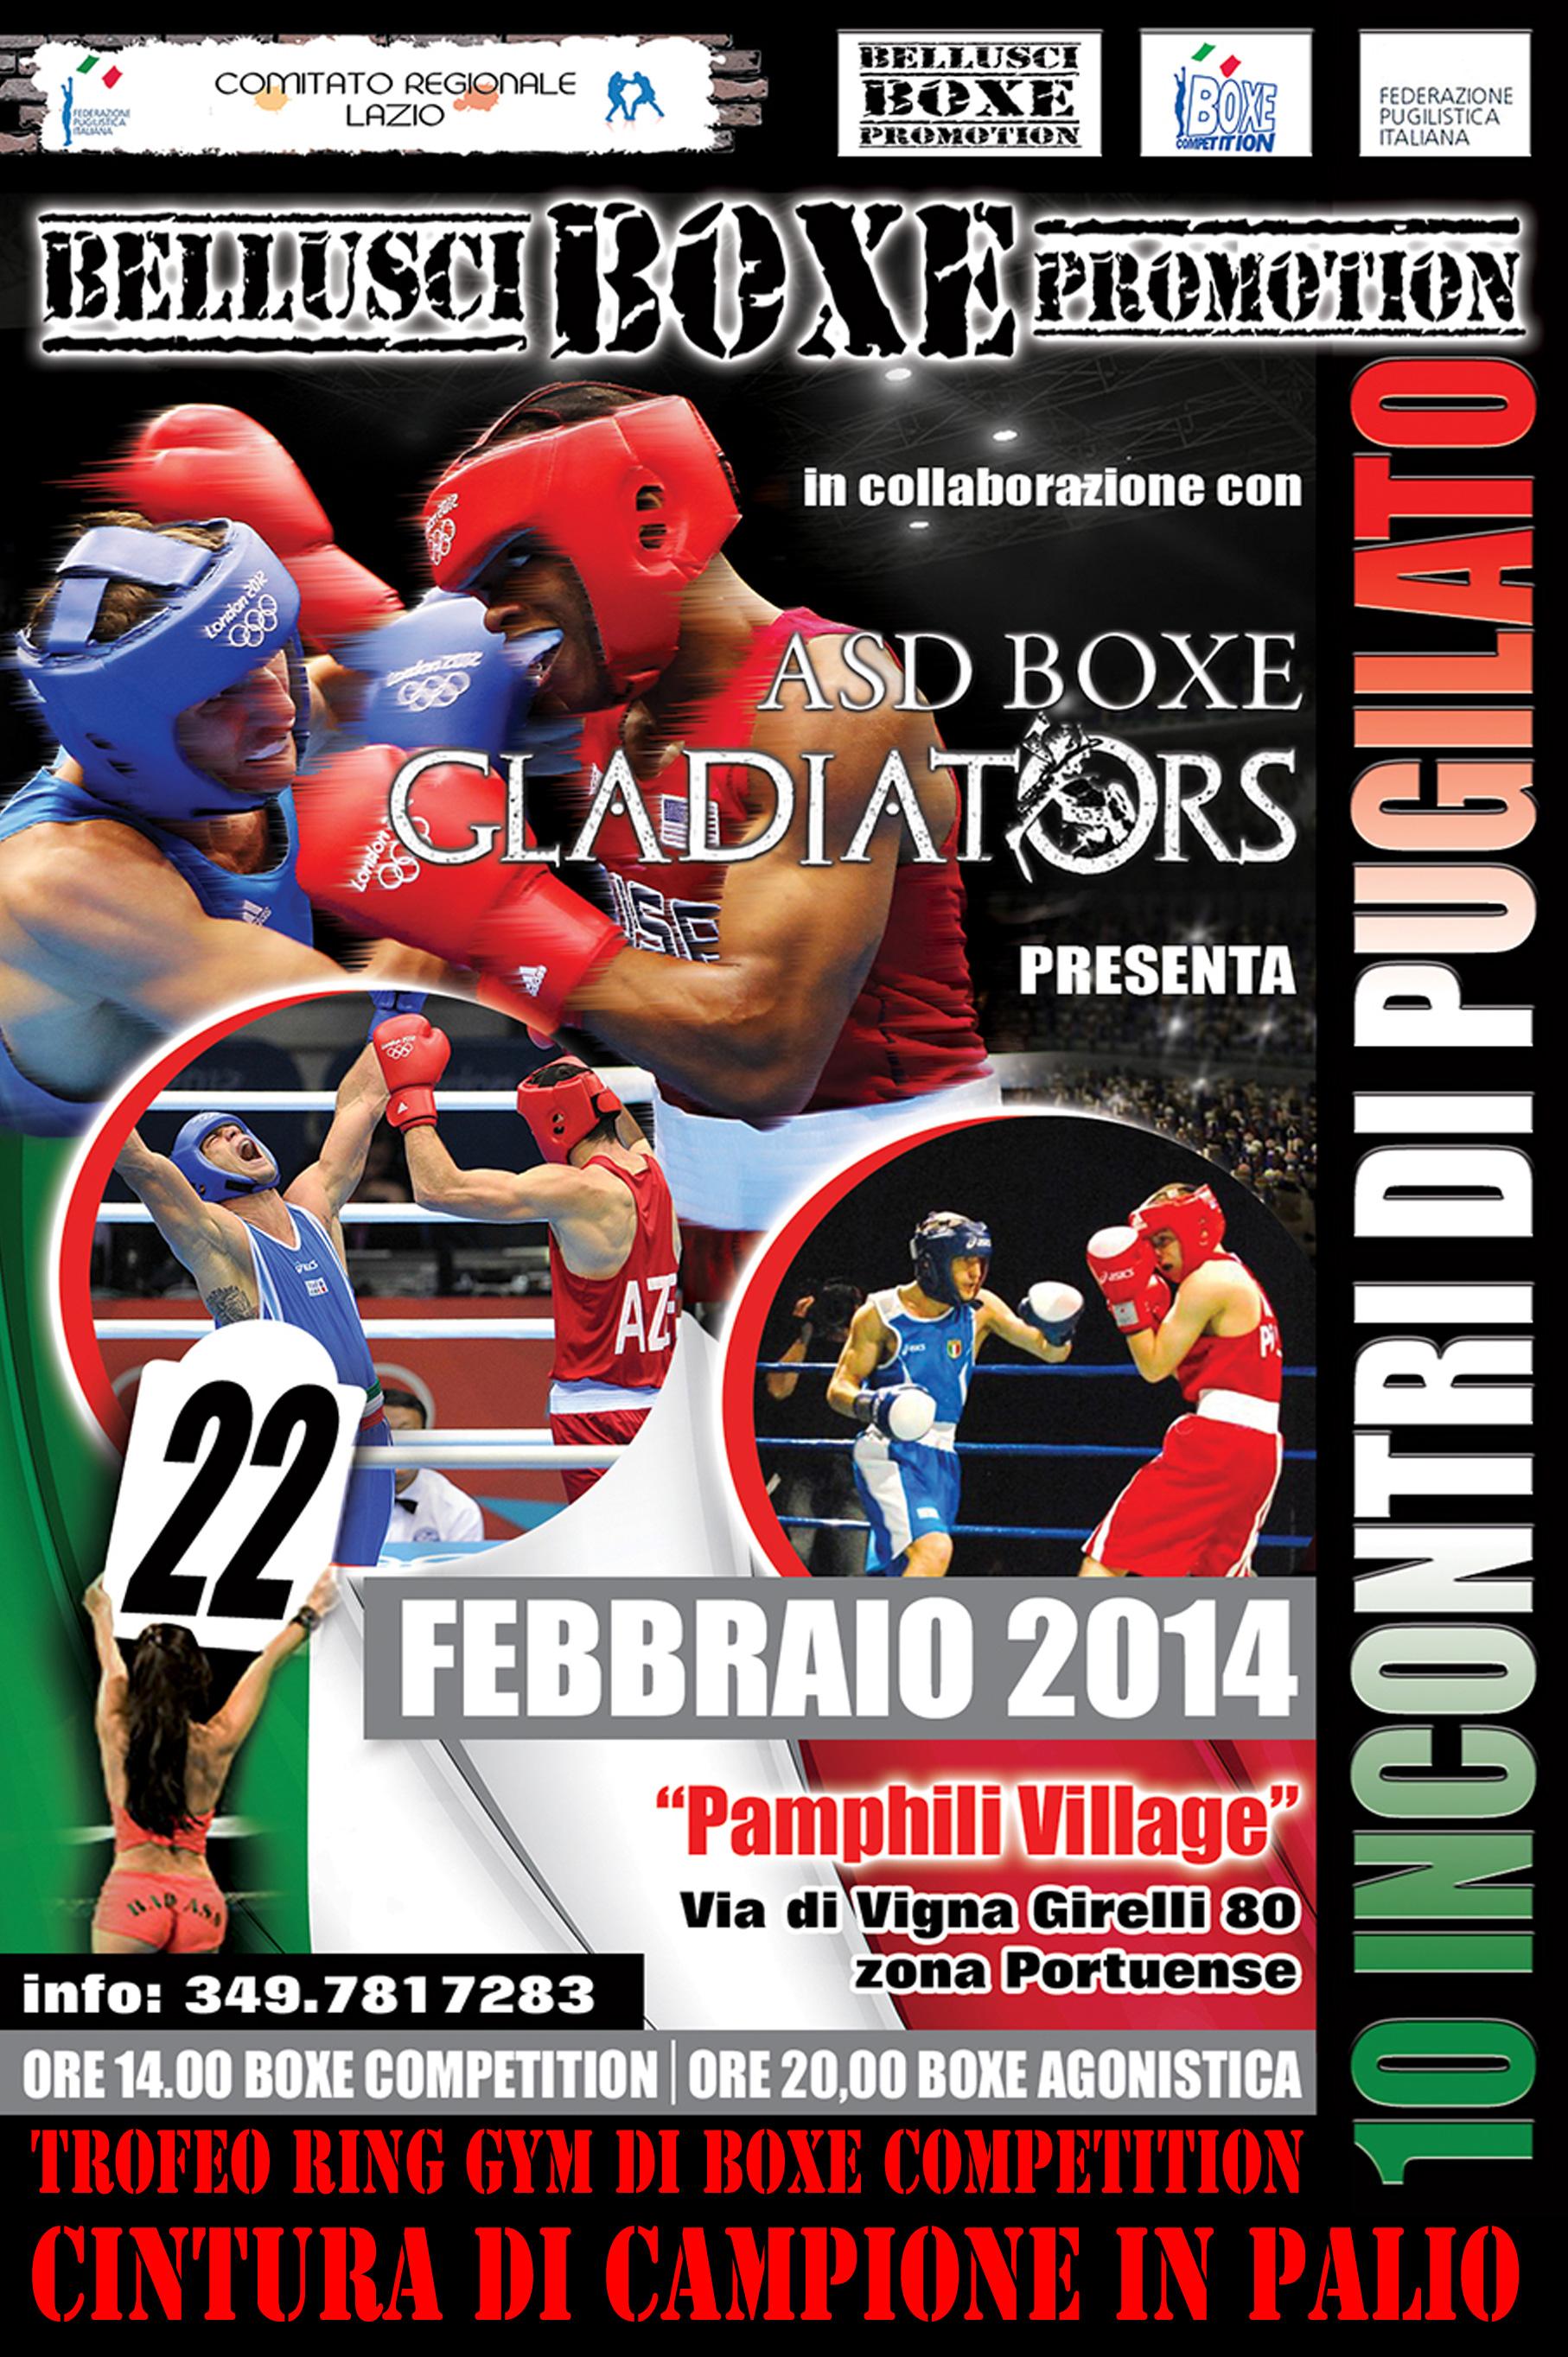 Boxe Competition: A Roma il 22 Febbraio il Trofeo Ring Gym